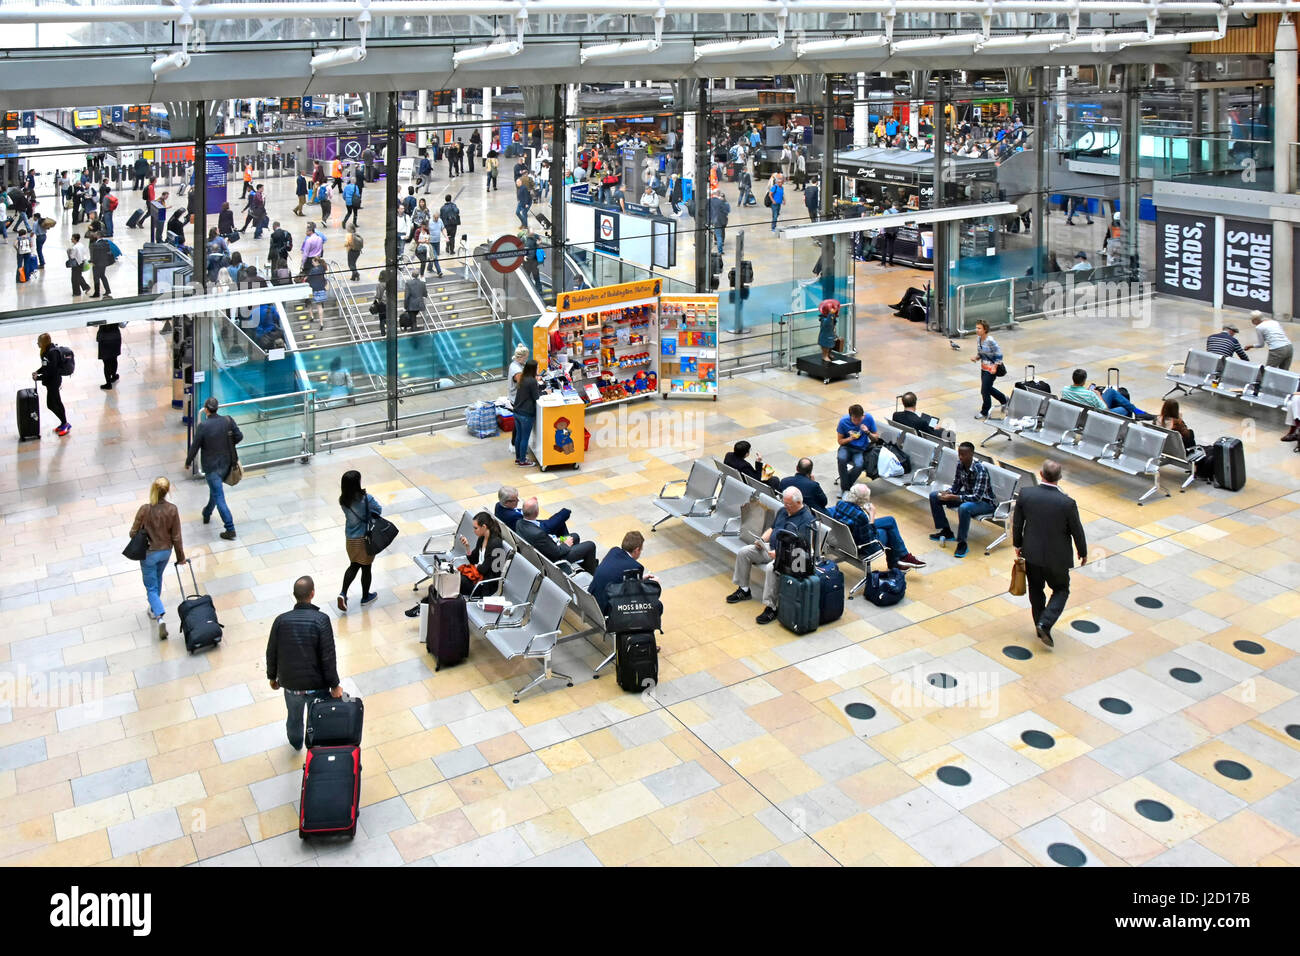 Stazione ferroviaria di Londra Paddington gestita da Network Rail passeggeri seduti in attesa di bagagli per i trasporti pubblici servizi ferroviari Inghilterra Regno Unito Foto Stock